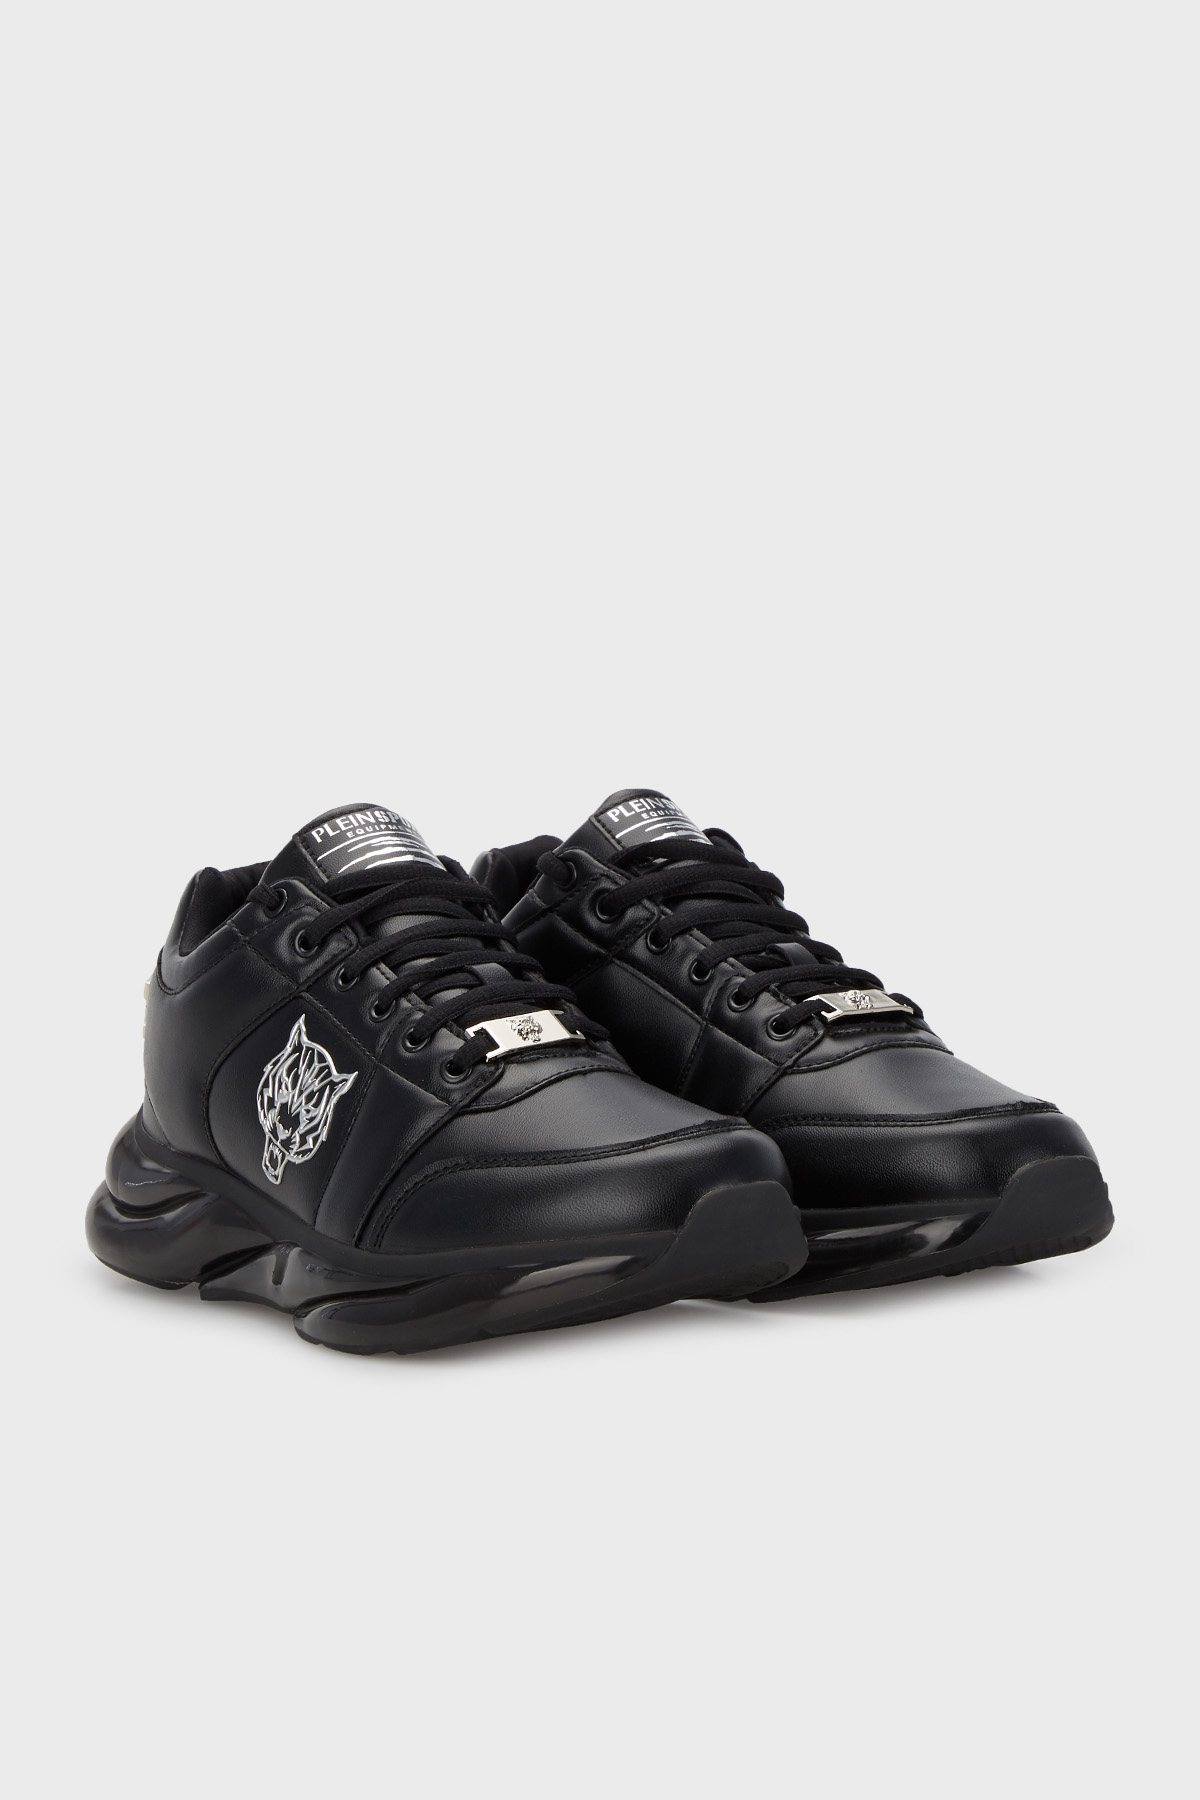 Plein Sport Logolu Deri Sneaker Erkek Ayakkabı SIPS96199 SİYAH